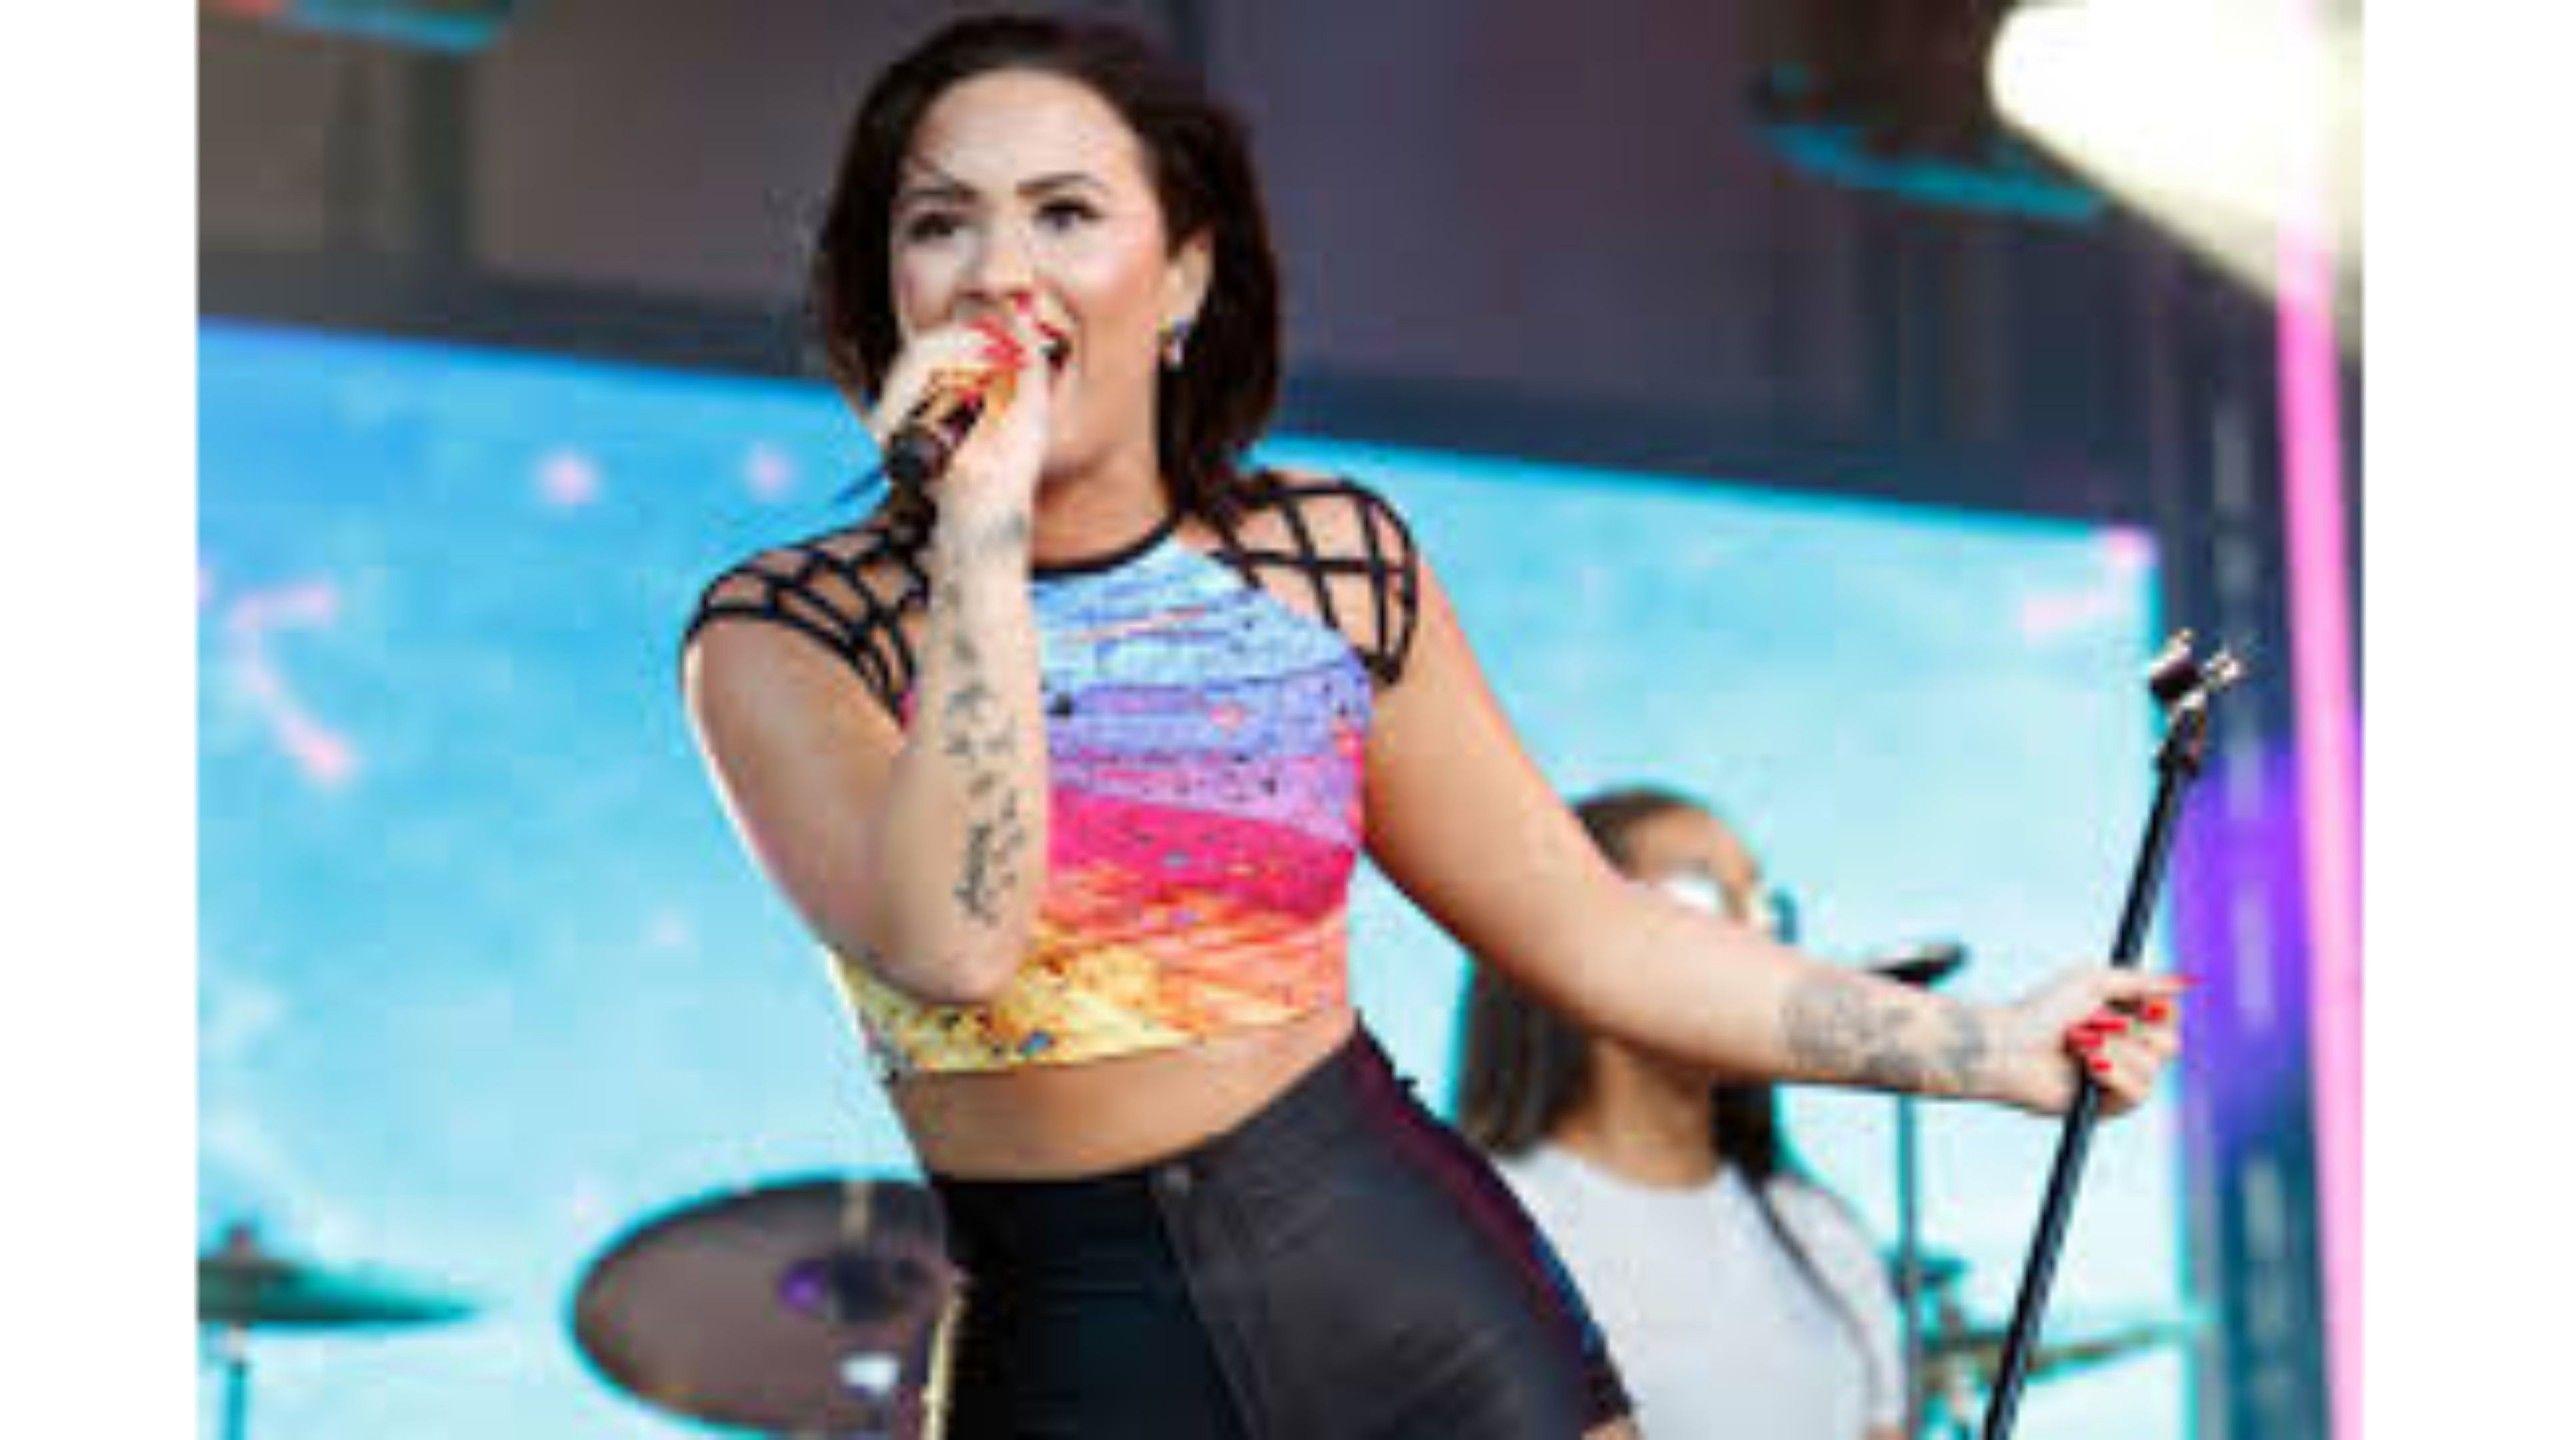 Singer 2016 Demi Lovato 4K Wallpaper. Free 4K Wallpaper